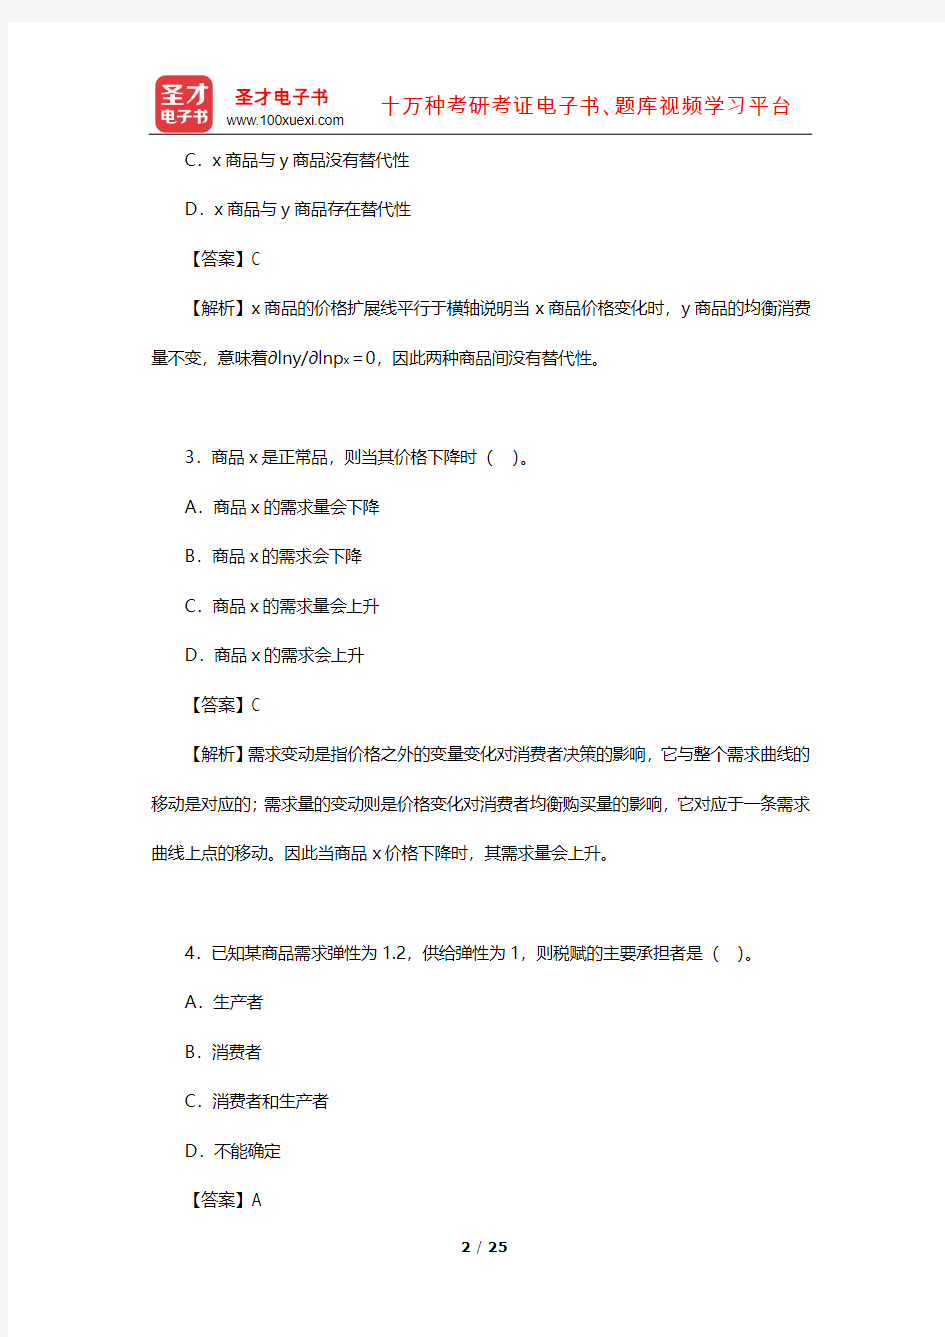 中国科学院大学北京市培养单位867经济学考研模拟试题及详解(一)【圣才出品】